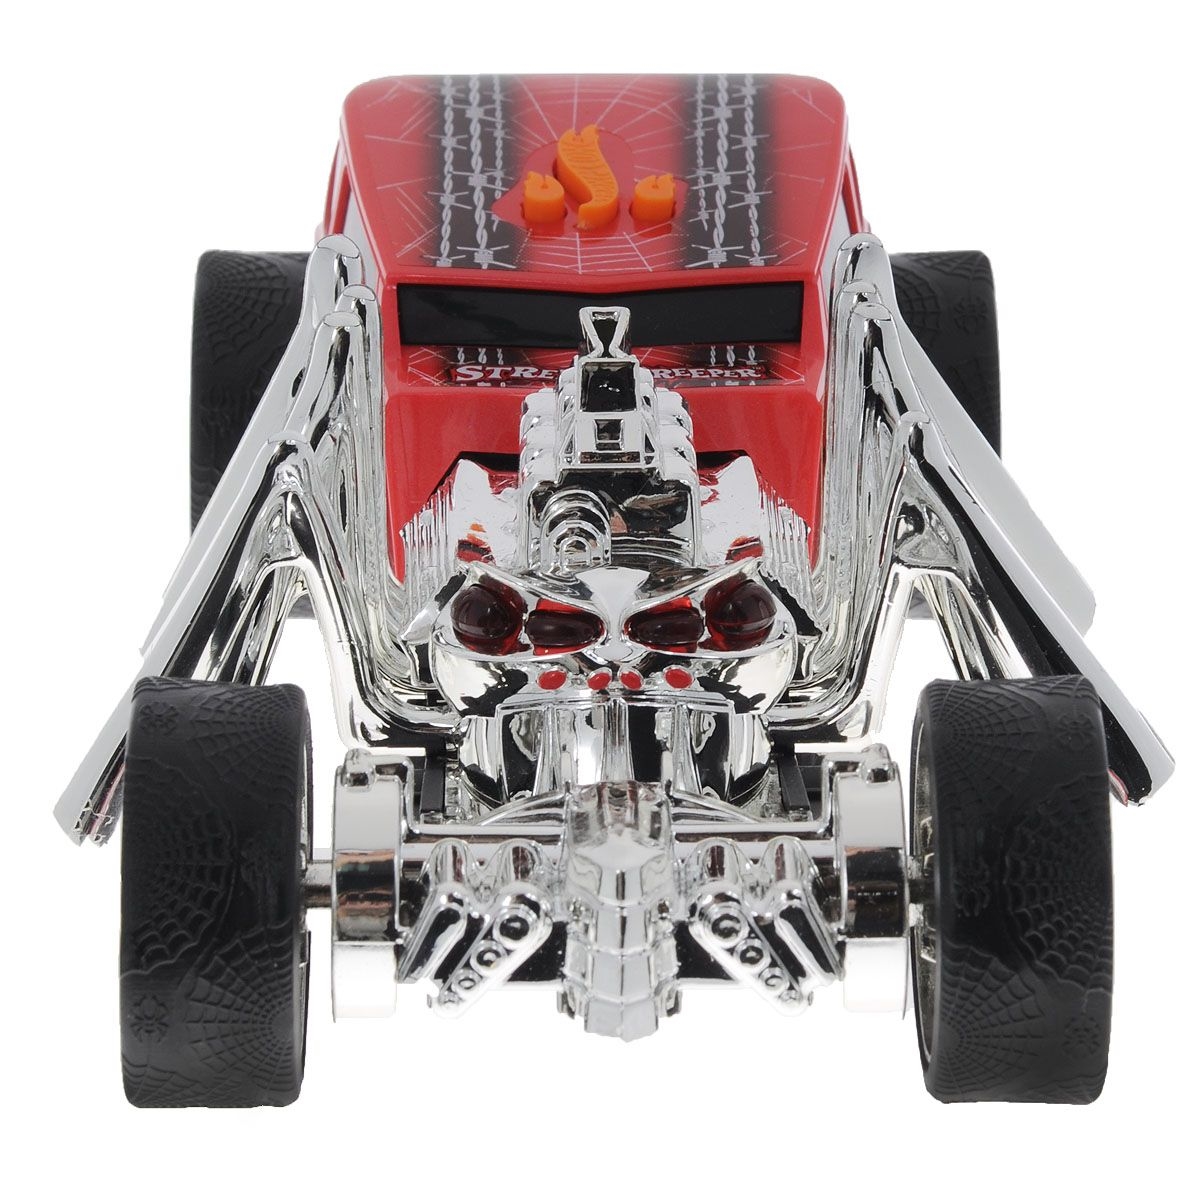 Электромеханическая машинка Hot Wheels со светом и звуком – Паук, красная 23 см  